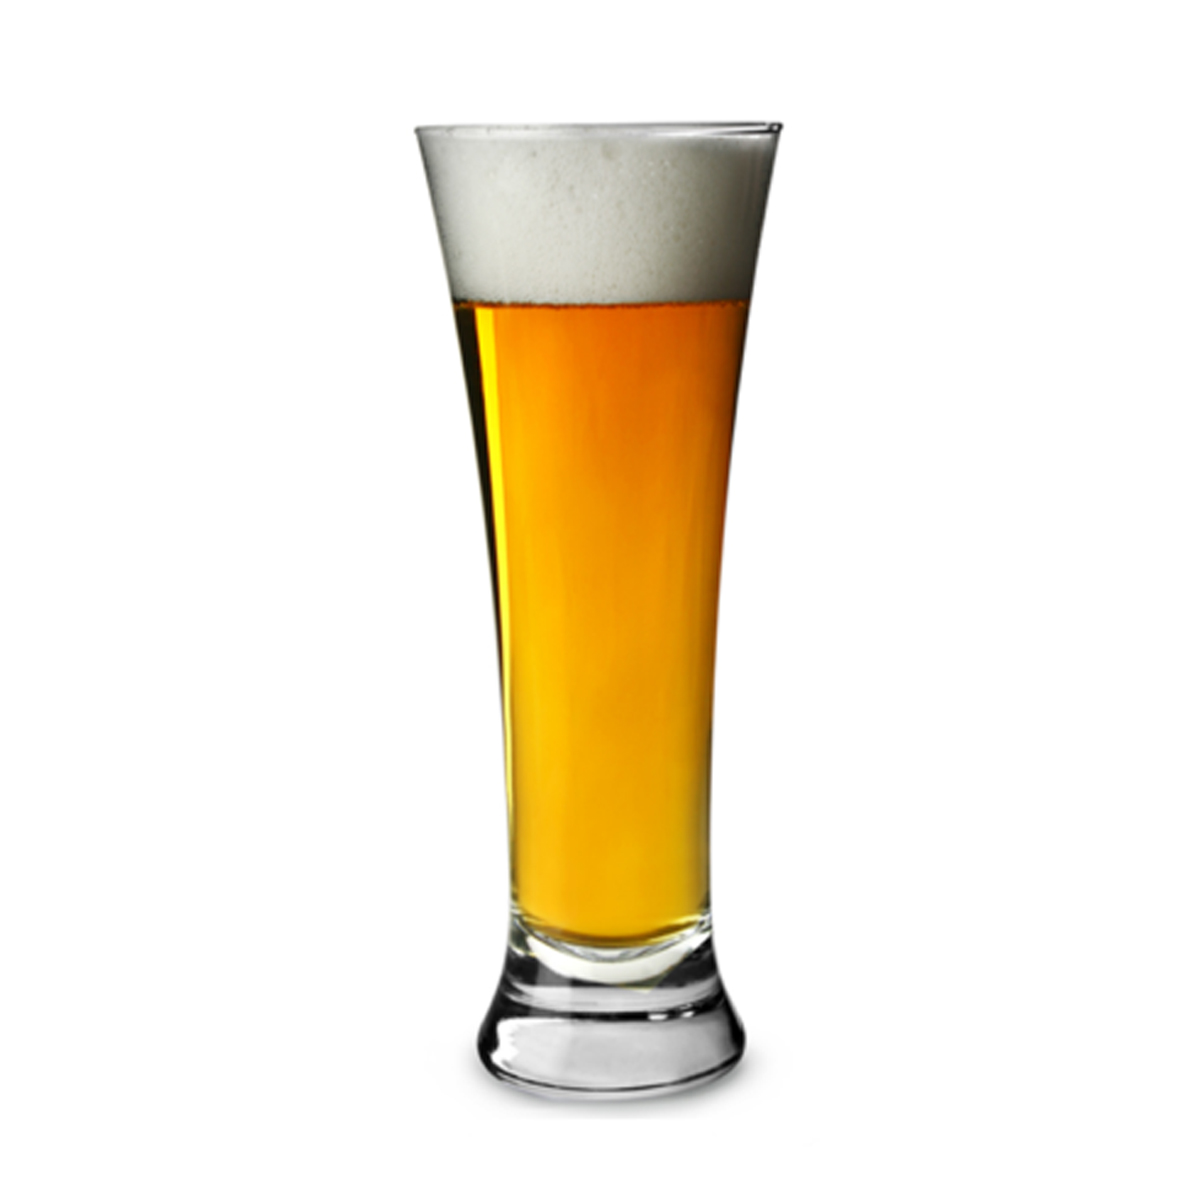 Schumann Bierglas 450 ml , mit Bier gefülltes Glas